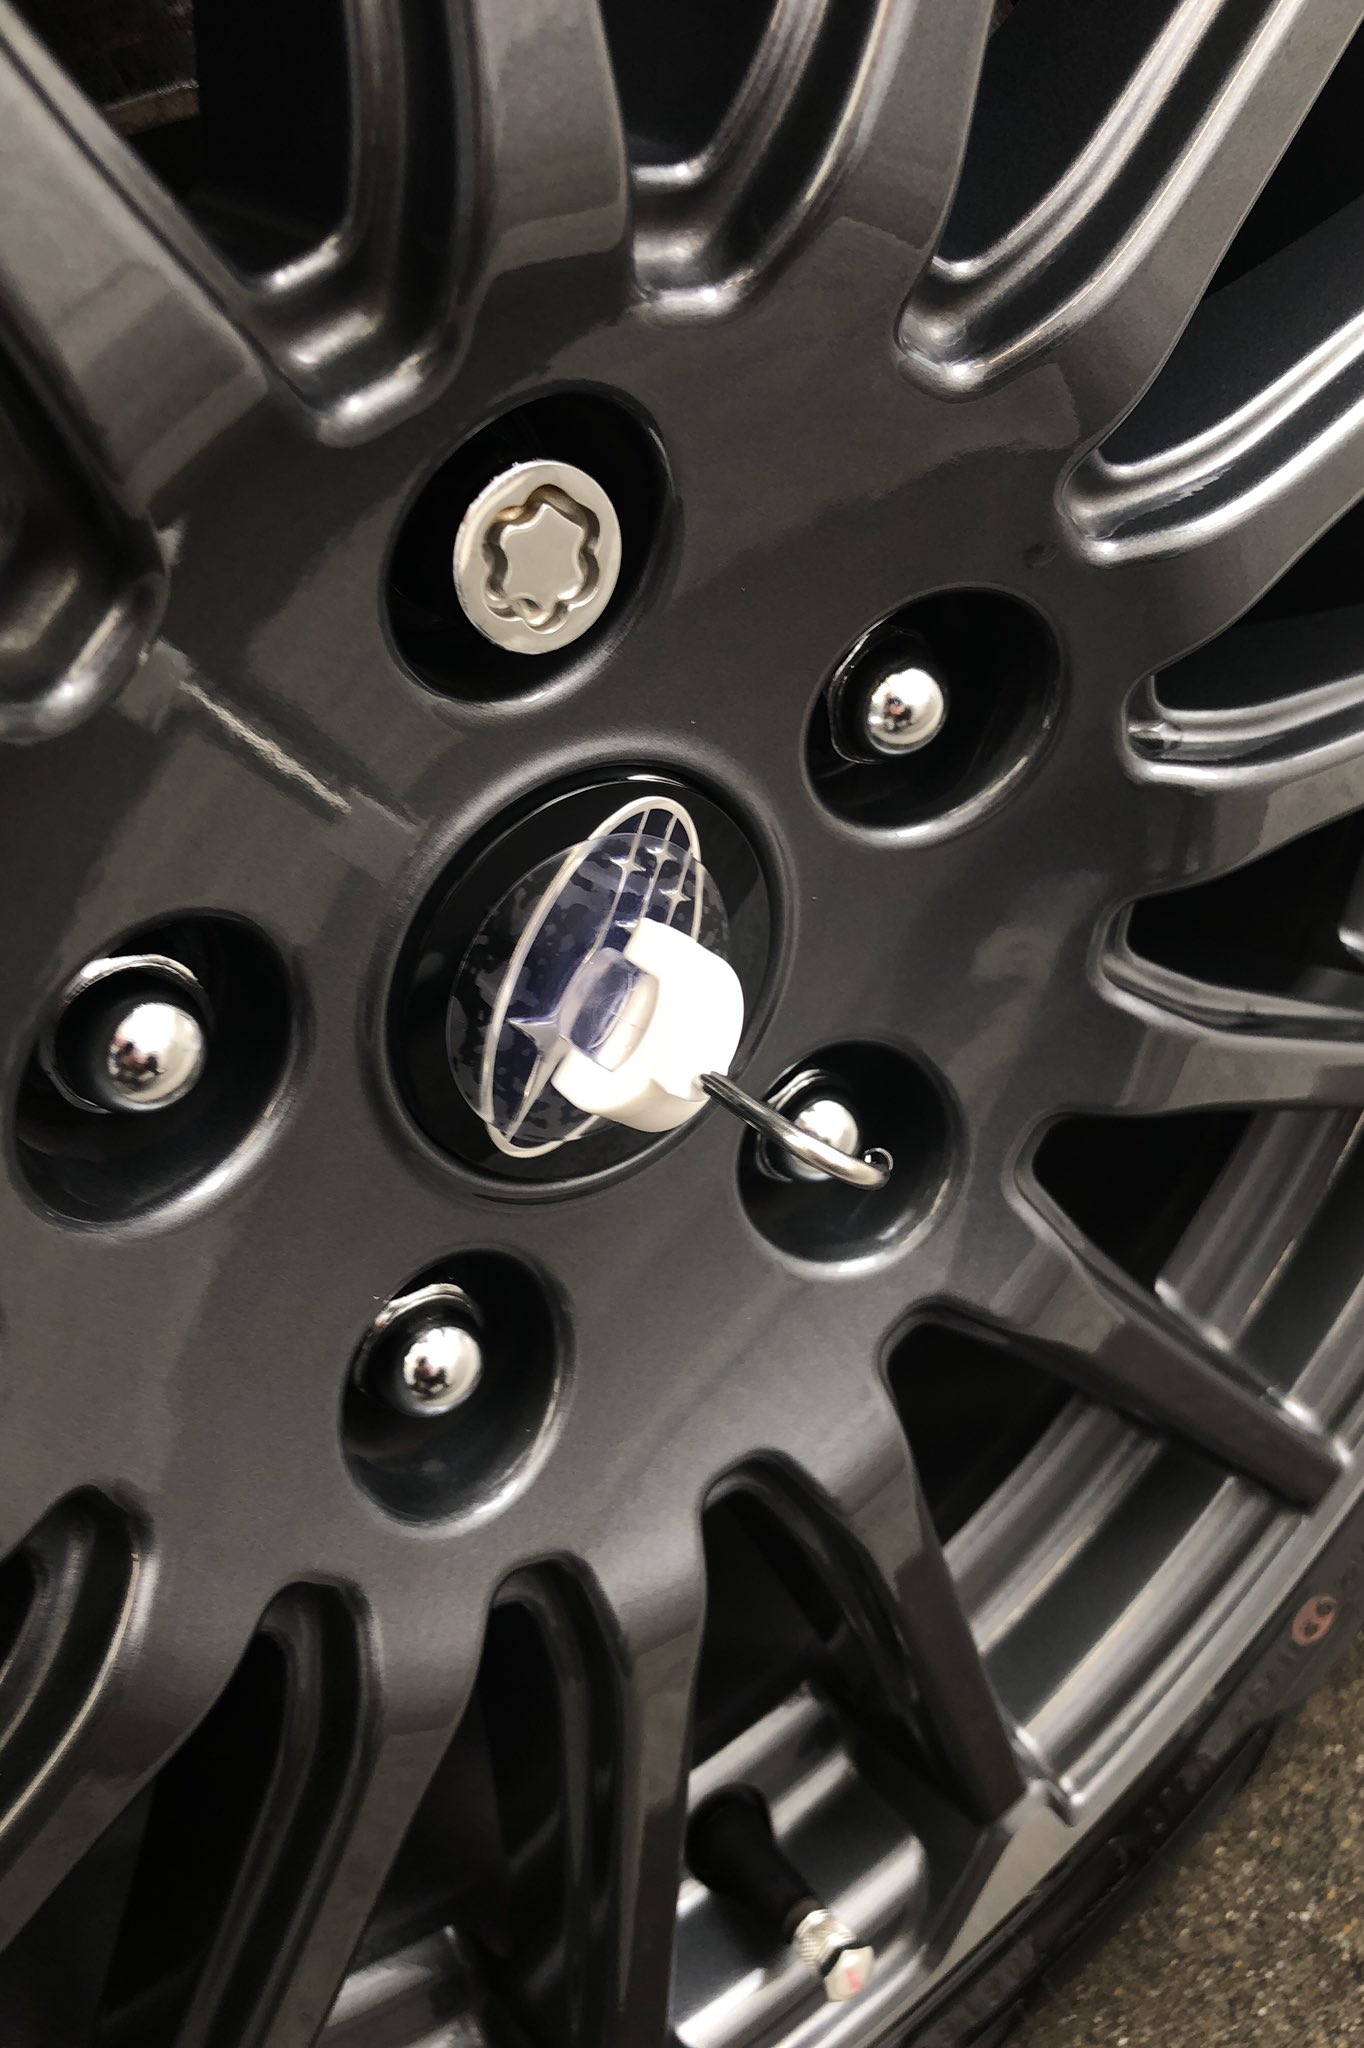 Levorg Sti 今日は朝から洗車 そして洗車後に ホイールセンターキャップ交換 タイヤ外さず ダイソーの吸盤で簡単に 取れました Levorg Subaru レヴォーグ スバル Sti ホイールセンターキャップ 交換 ダイソー 吸盤 T Co Xxdvrzhm6p